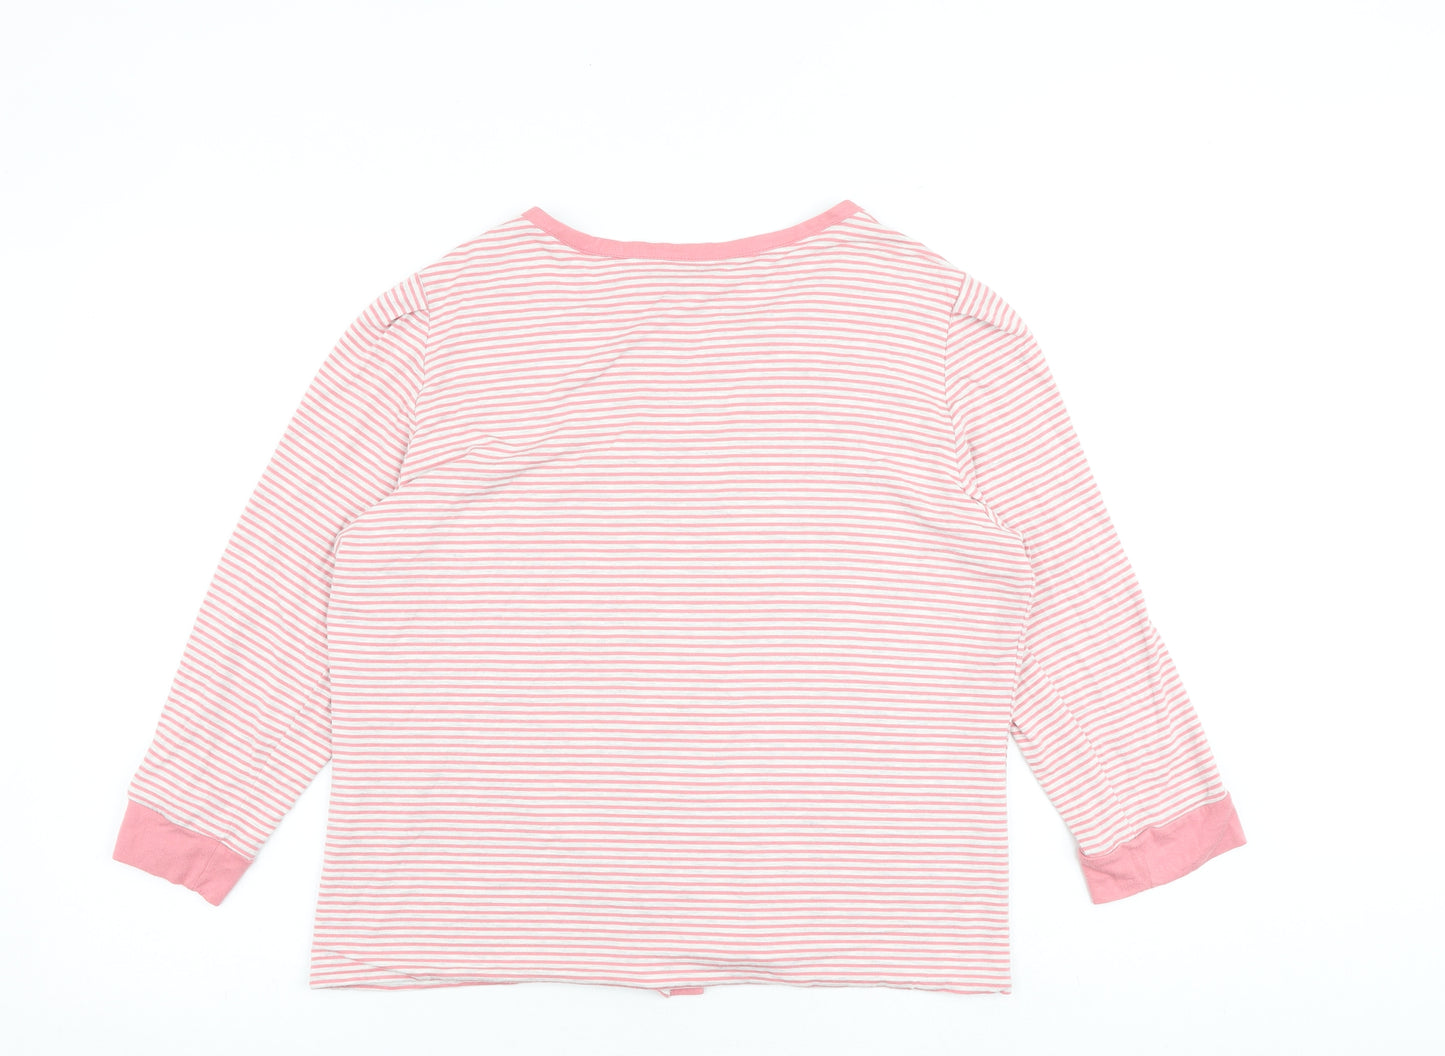 baujken Womens Pink Round Neck Striped Polyester Cardigan Jumper Size 16